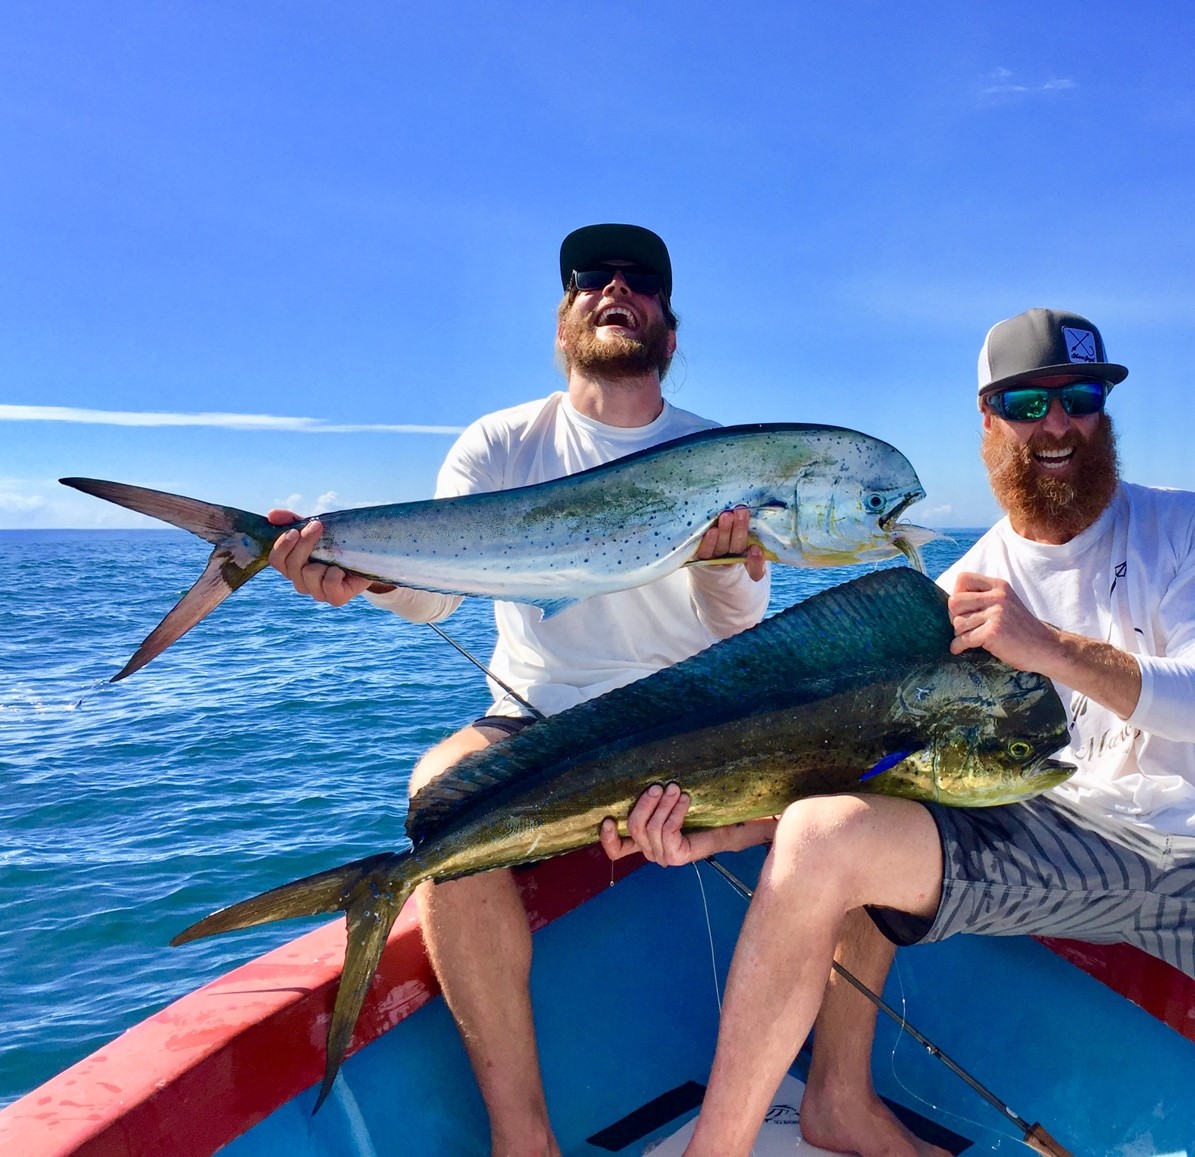 Pêche du poisson-coq au Costa Rica : le paradis du pêcheur